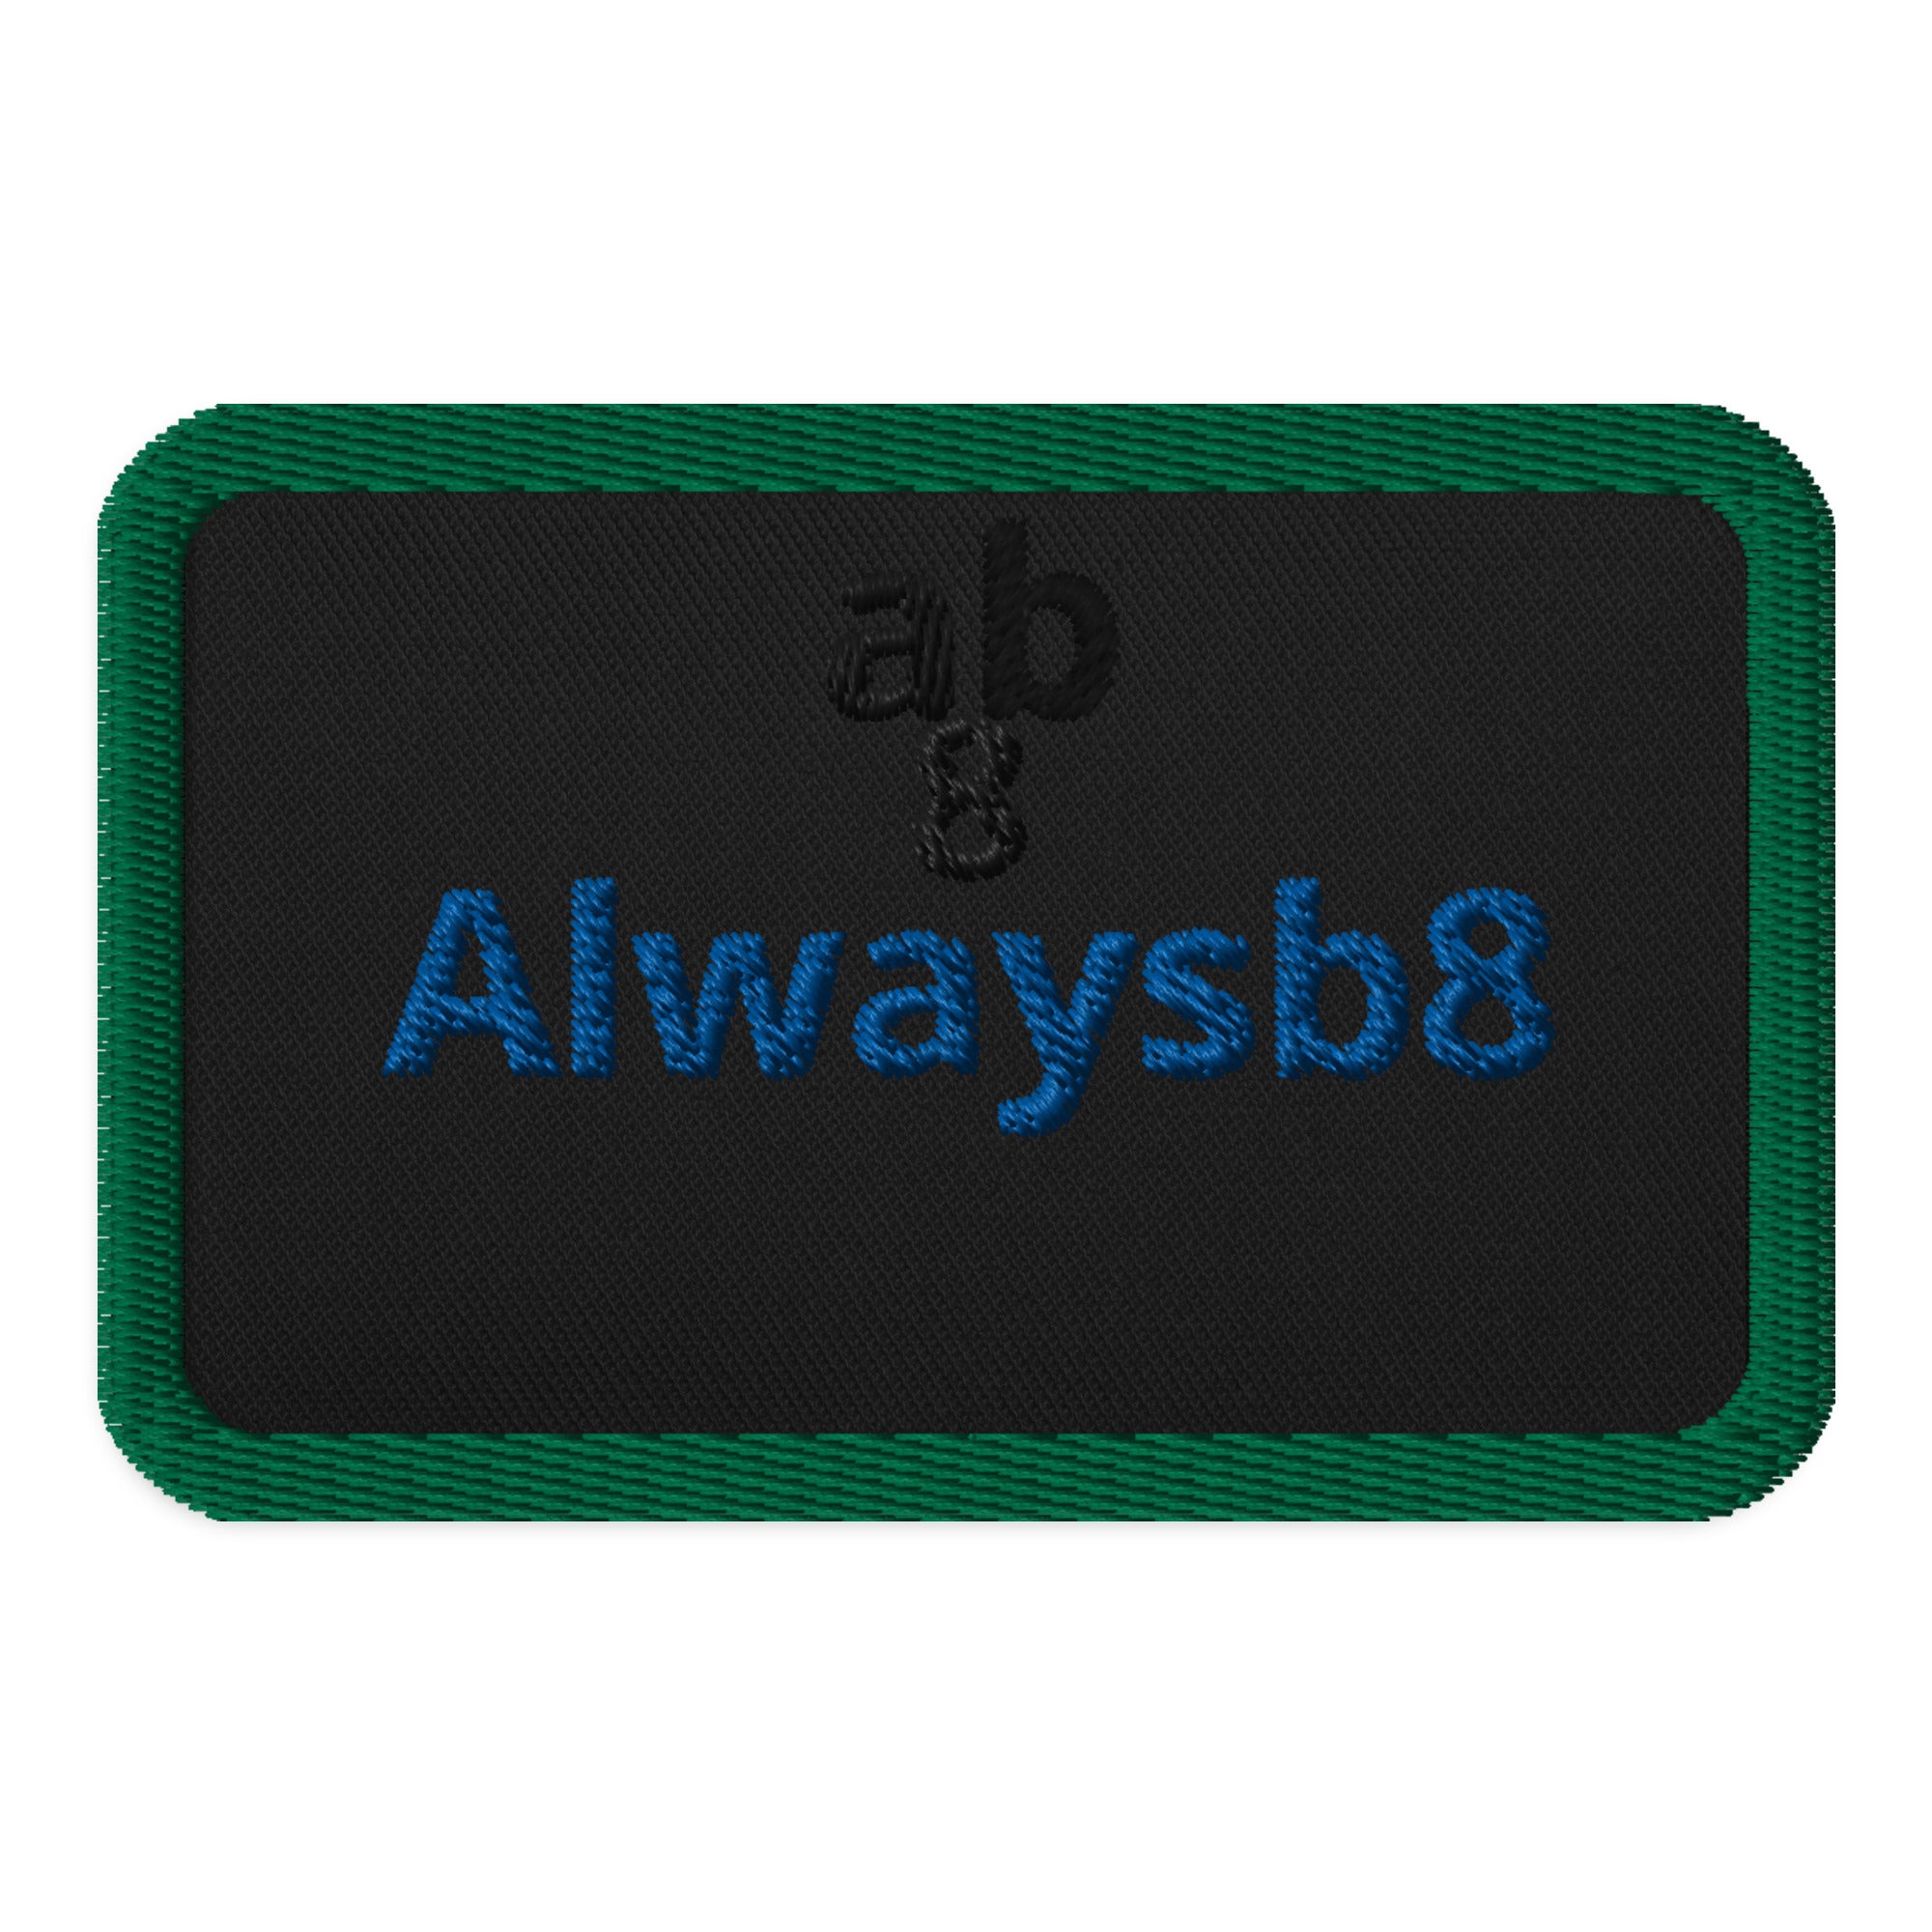 Alwaysb8